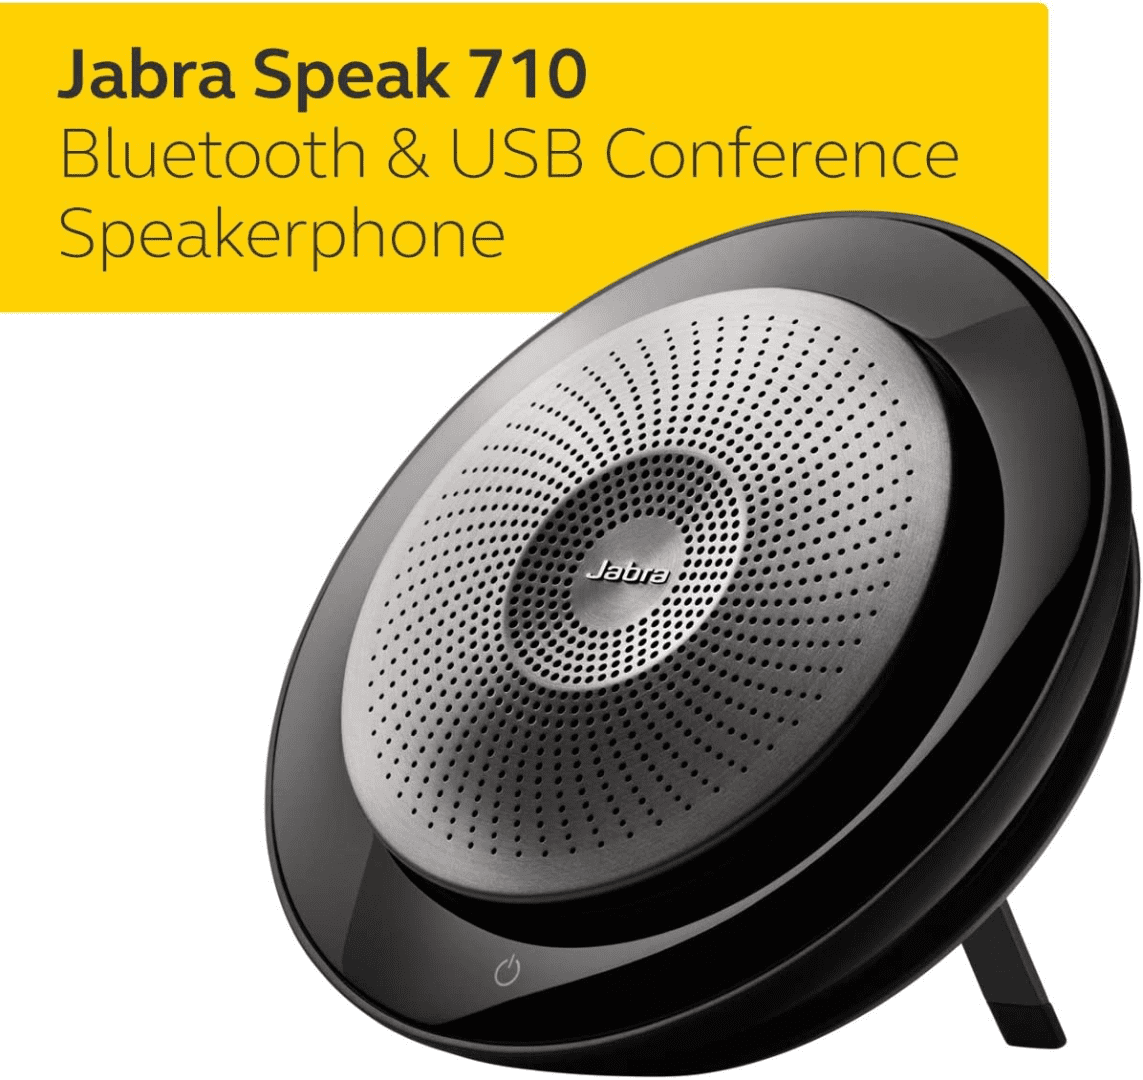 Jabra Speak 710 professional speakerphone